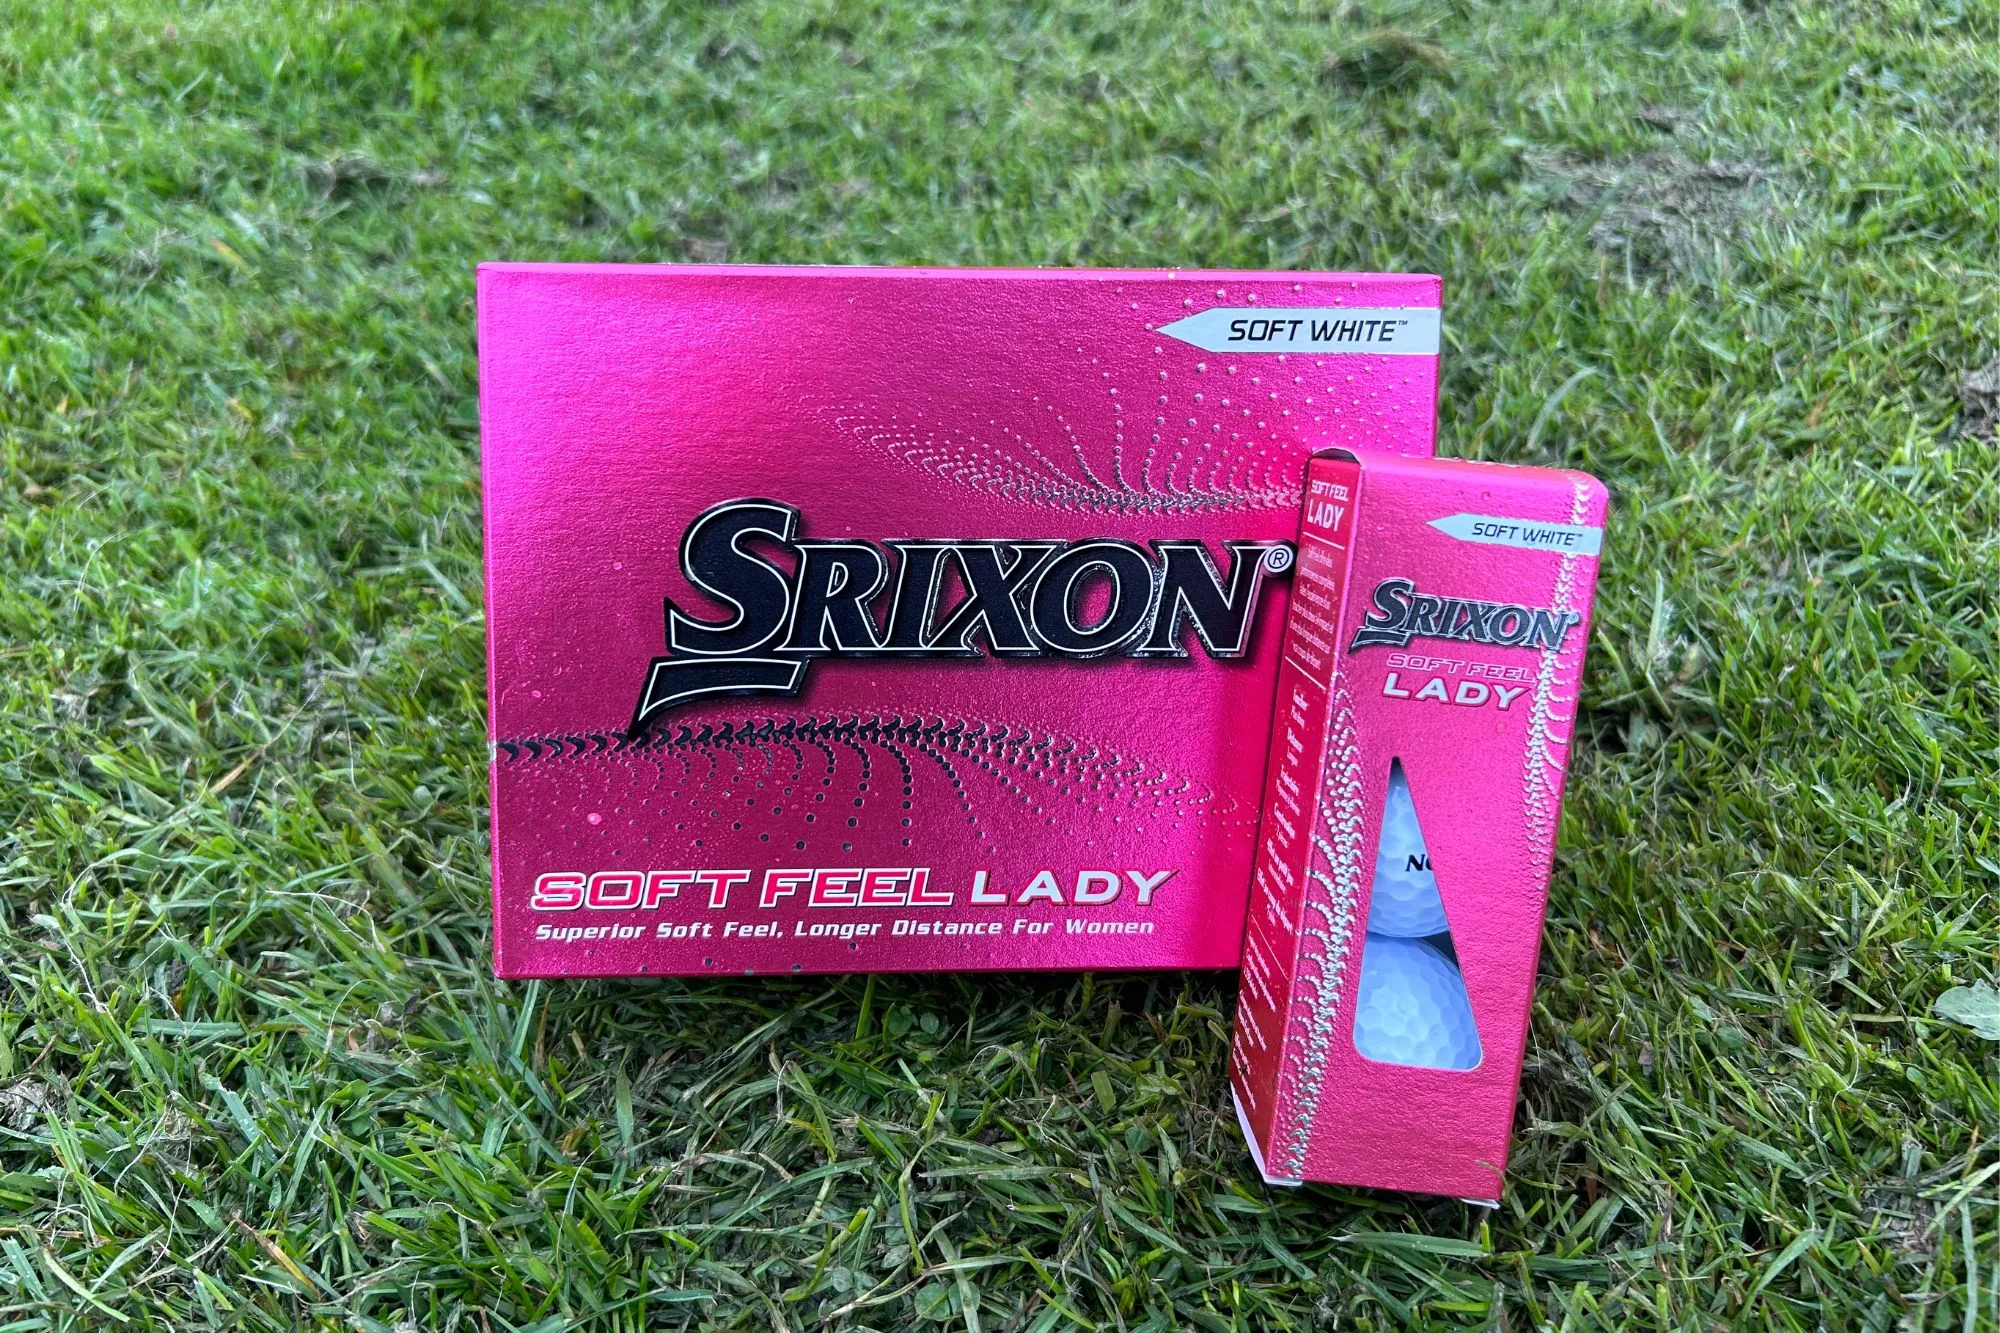 Srixon Soft Feel Lady golf ball review